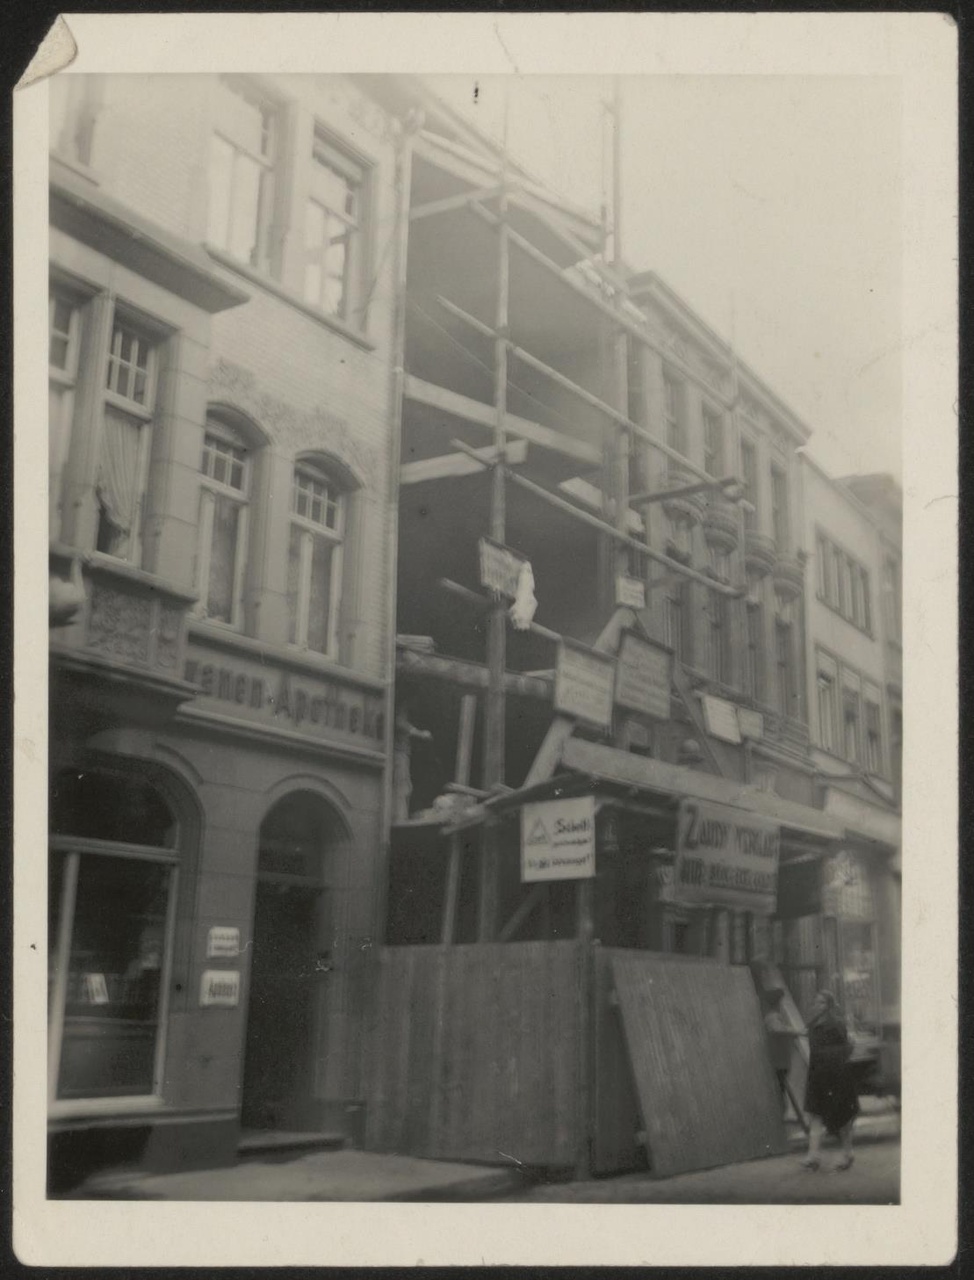 Afbeelding van winkel Zaudy, tijdens de bouw, 1928